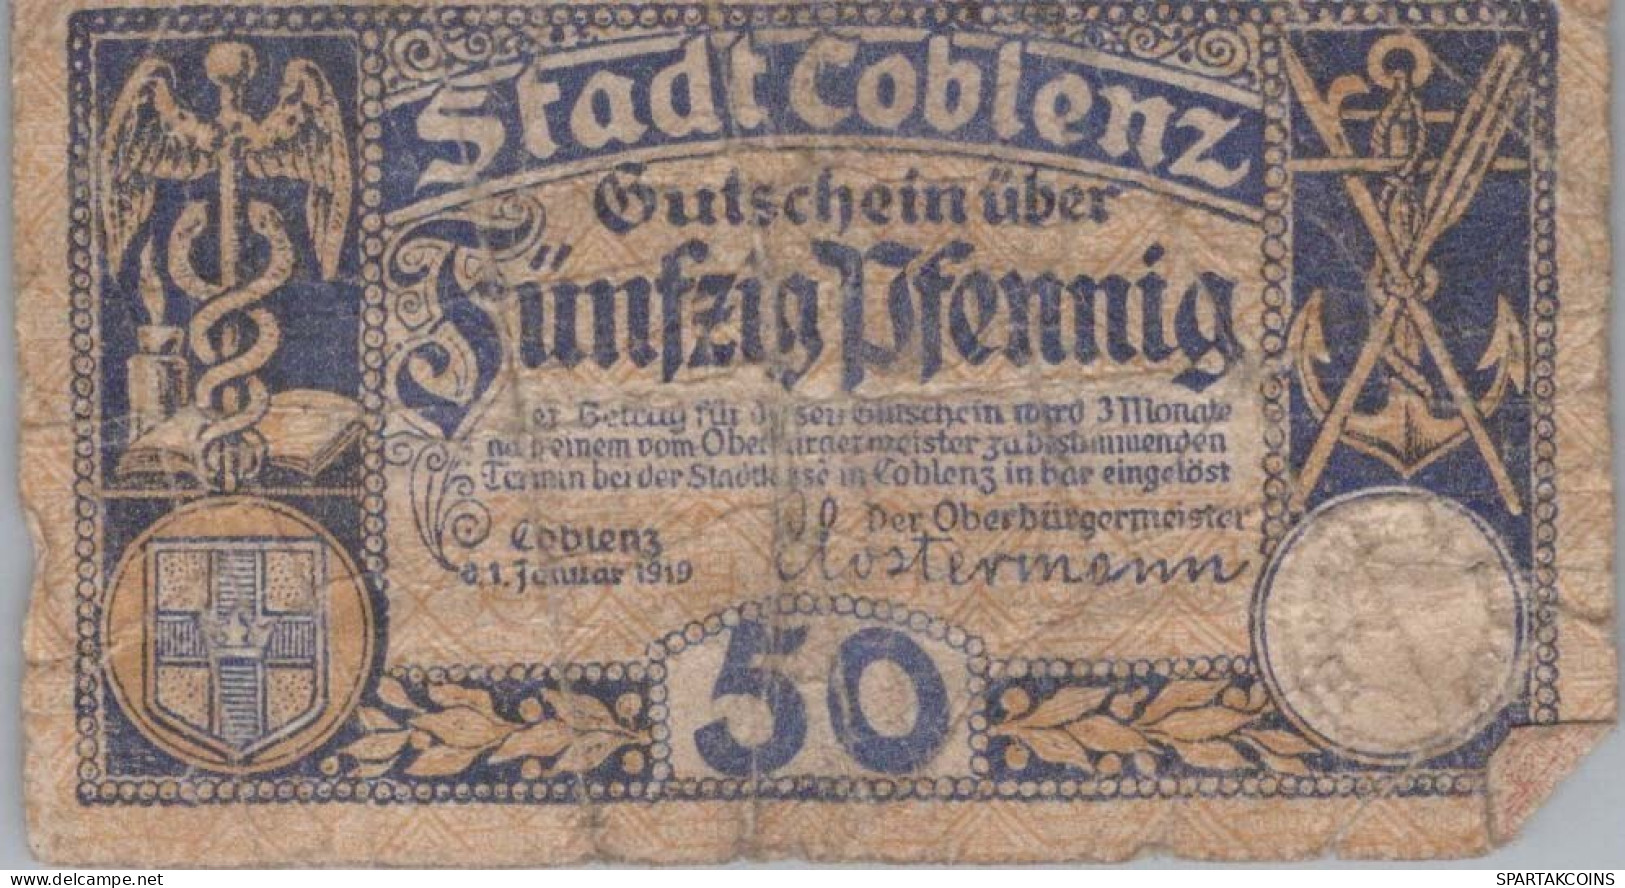 50 PFENNIG 1919 Stadt KOBLENZ Rhine DEUTSCHLAND Notgeld Banknote #PG454 - [11] Local Banknote Issues